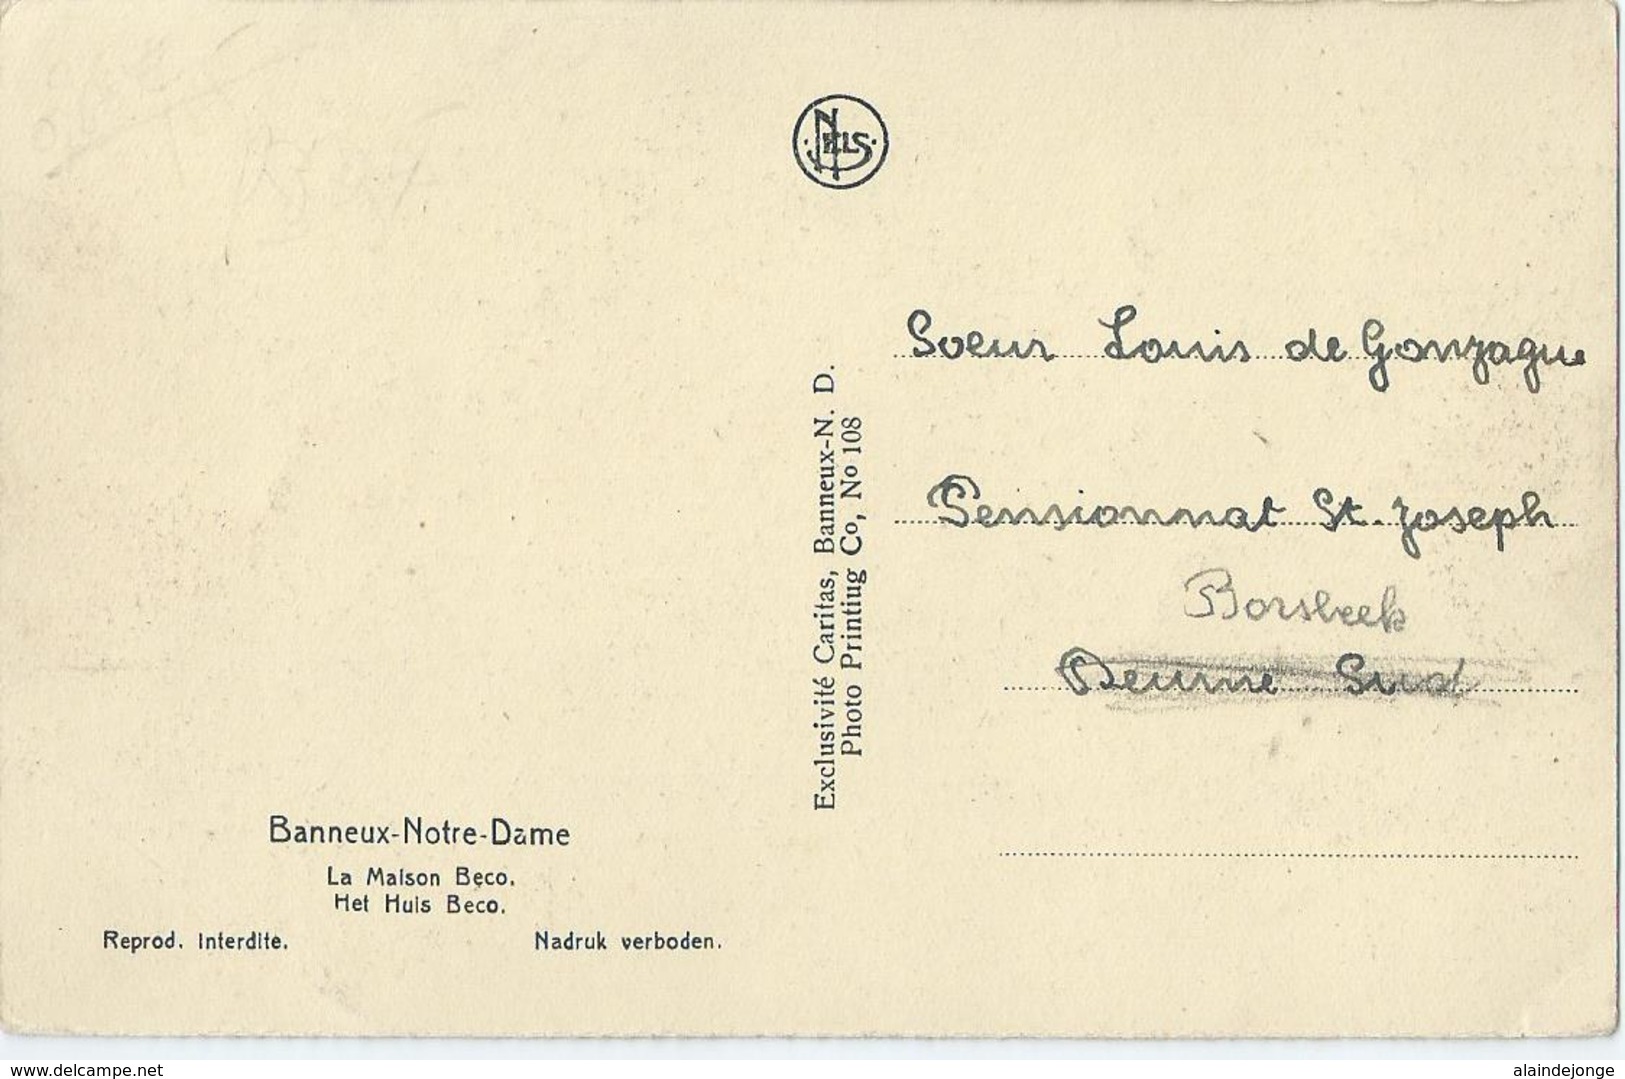 Banneux-Notre-Dame - La Maison Beco - Exclusivité Caritas No 108 - Sprimont